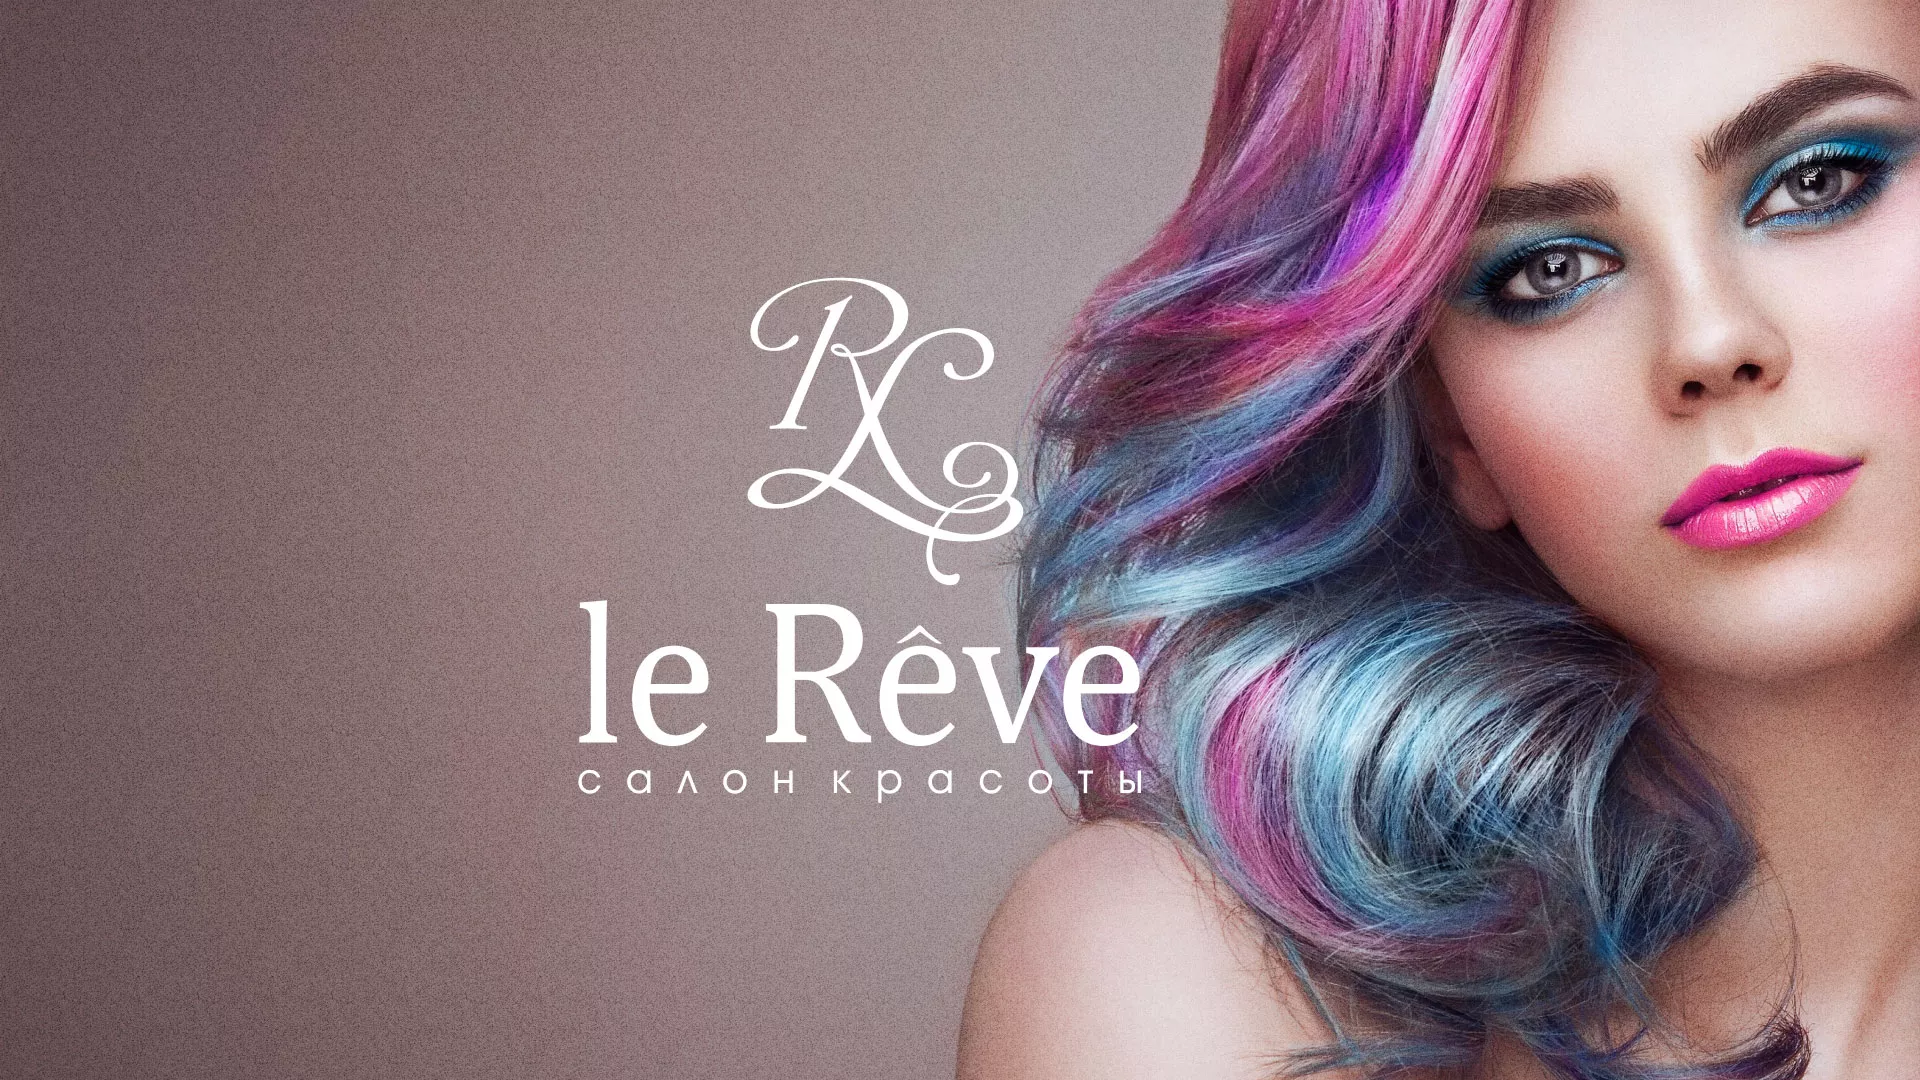 Создание сайта для салона красоты «Le Reve» в Пскове